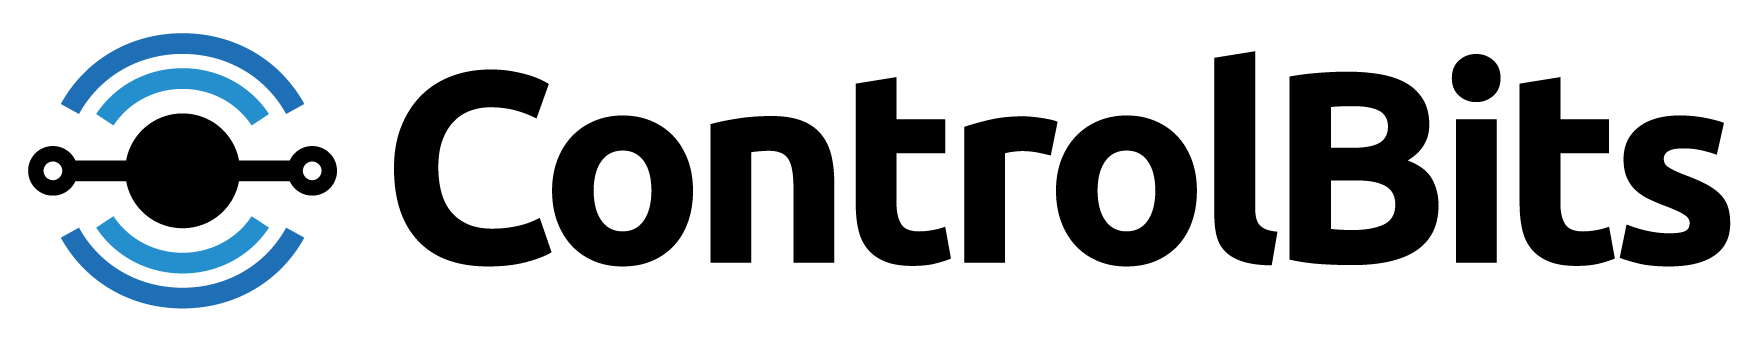 ControlBits.com logo